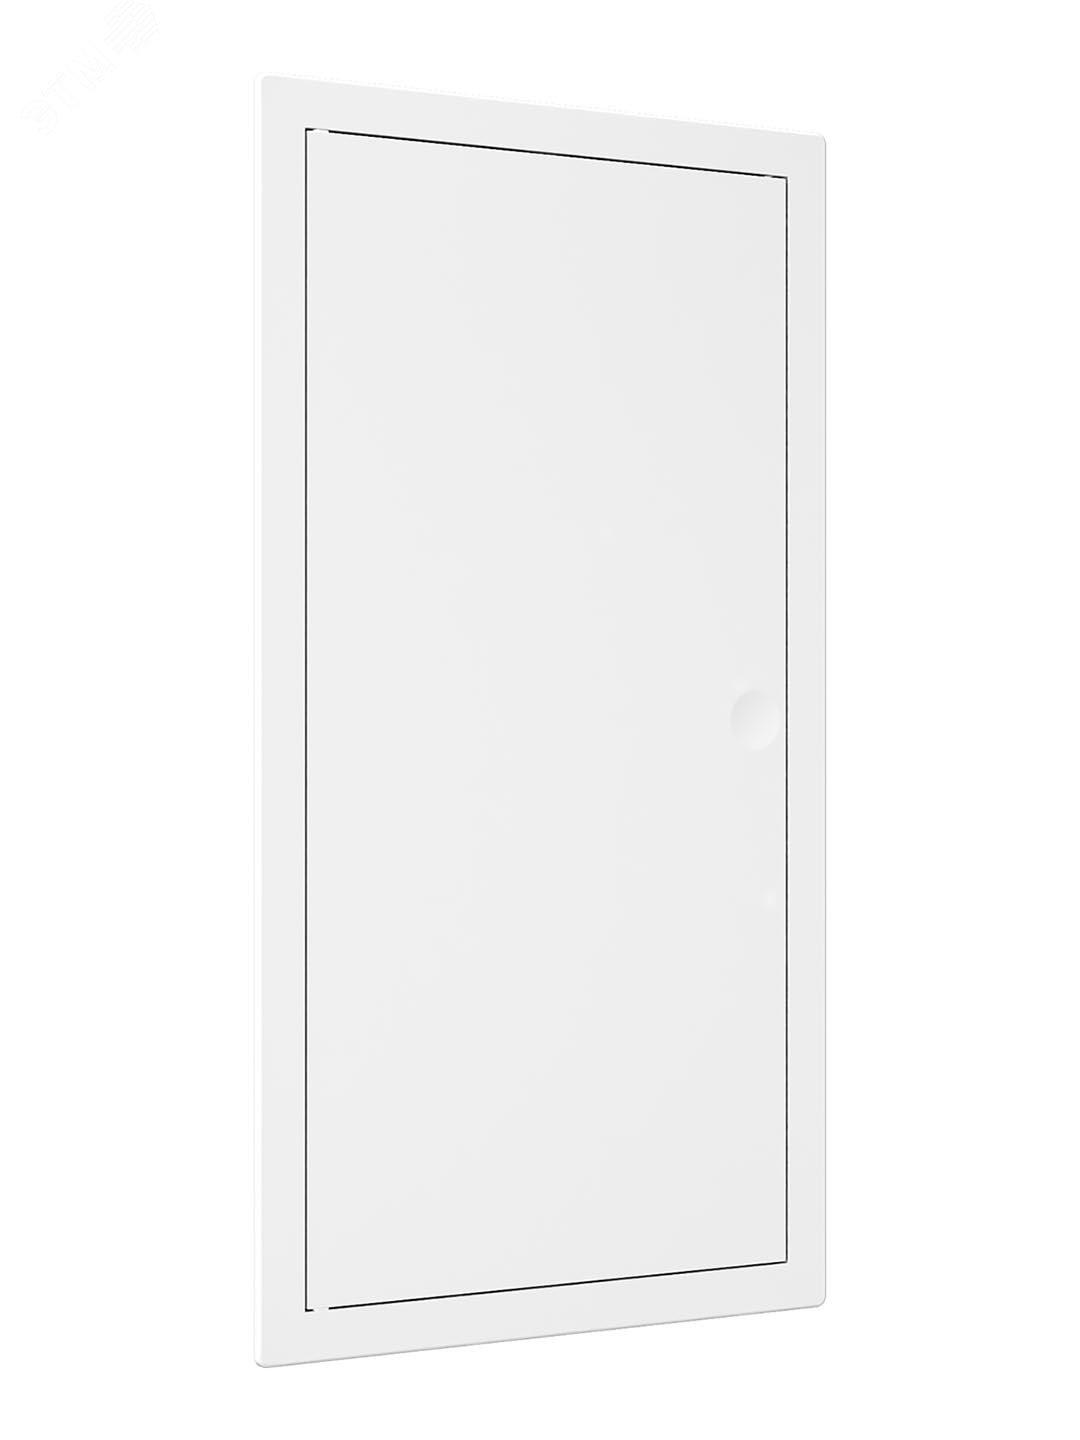 Люк-дверца ревизионный пластиковый нажимной 172х322 с фланцем 150х300 L1530N EVECS - превью